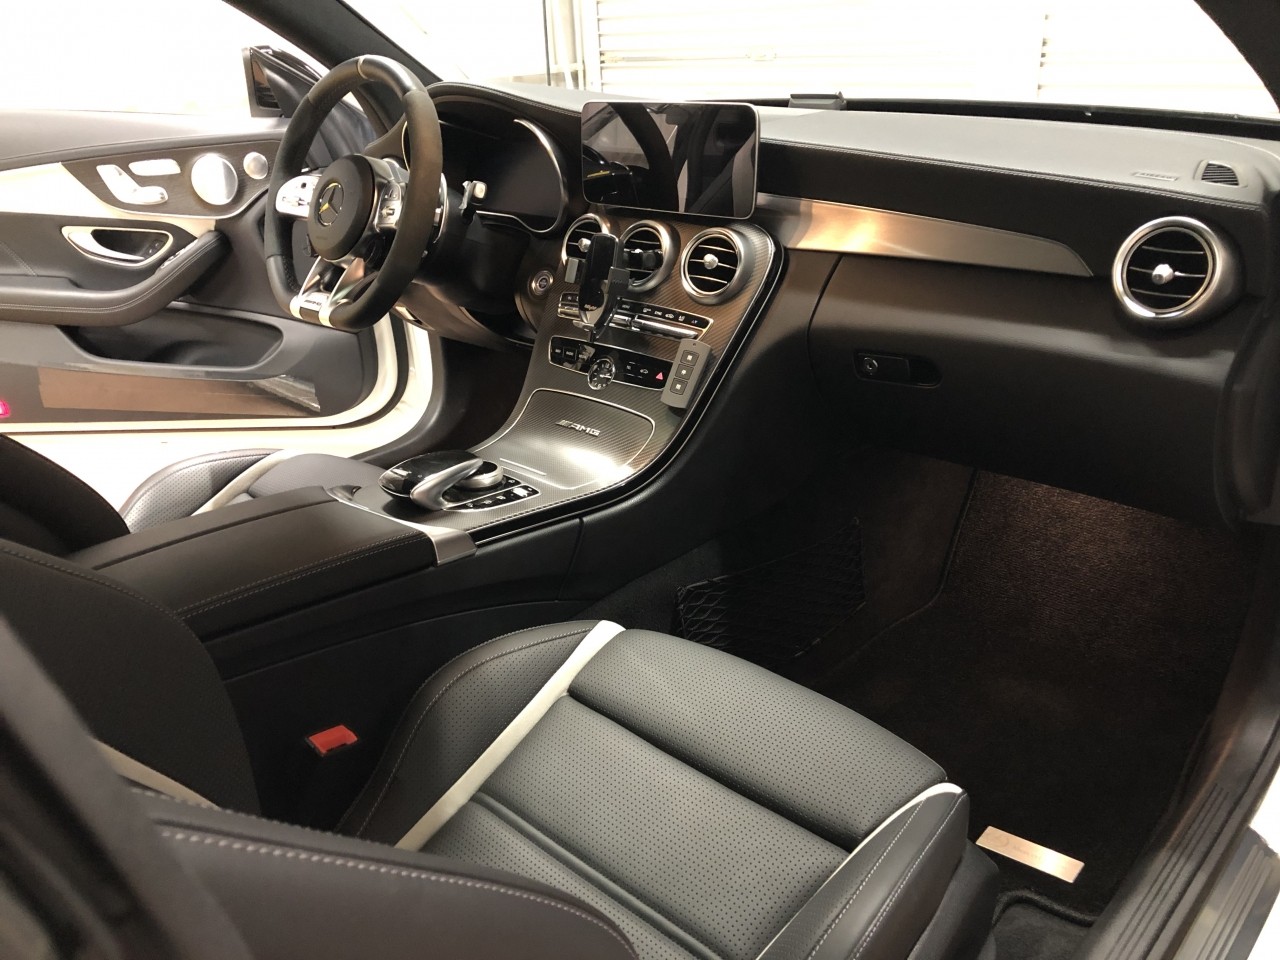 ご依頼作業 Mercedesbenz Amg C63s Coupe W5後期モデル 室内異音低減作業 その ブログ 自動車メーカー車両開発者が営む極上車専門店 Torino Cars トリノカーズ